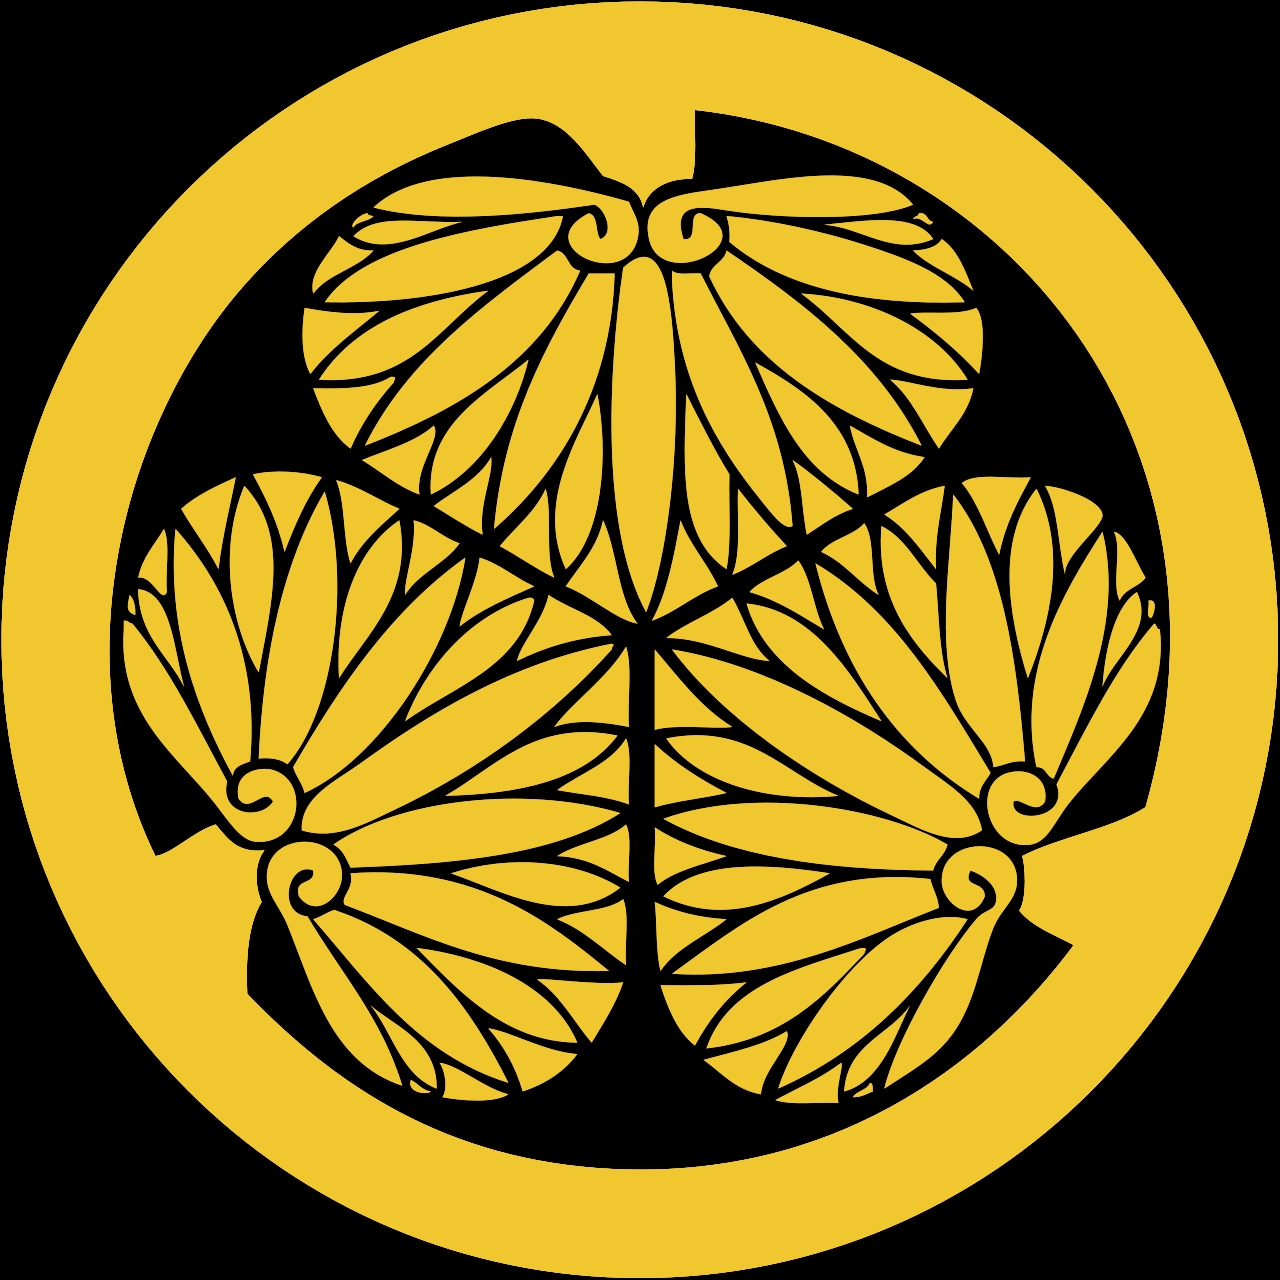 江户幕府,又称 德川幕府,是日本历史上第三个,也是最后一个幕府政权